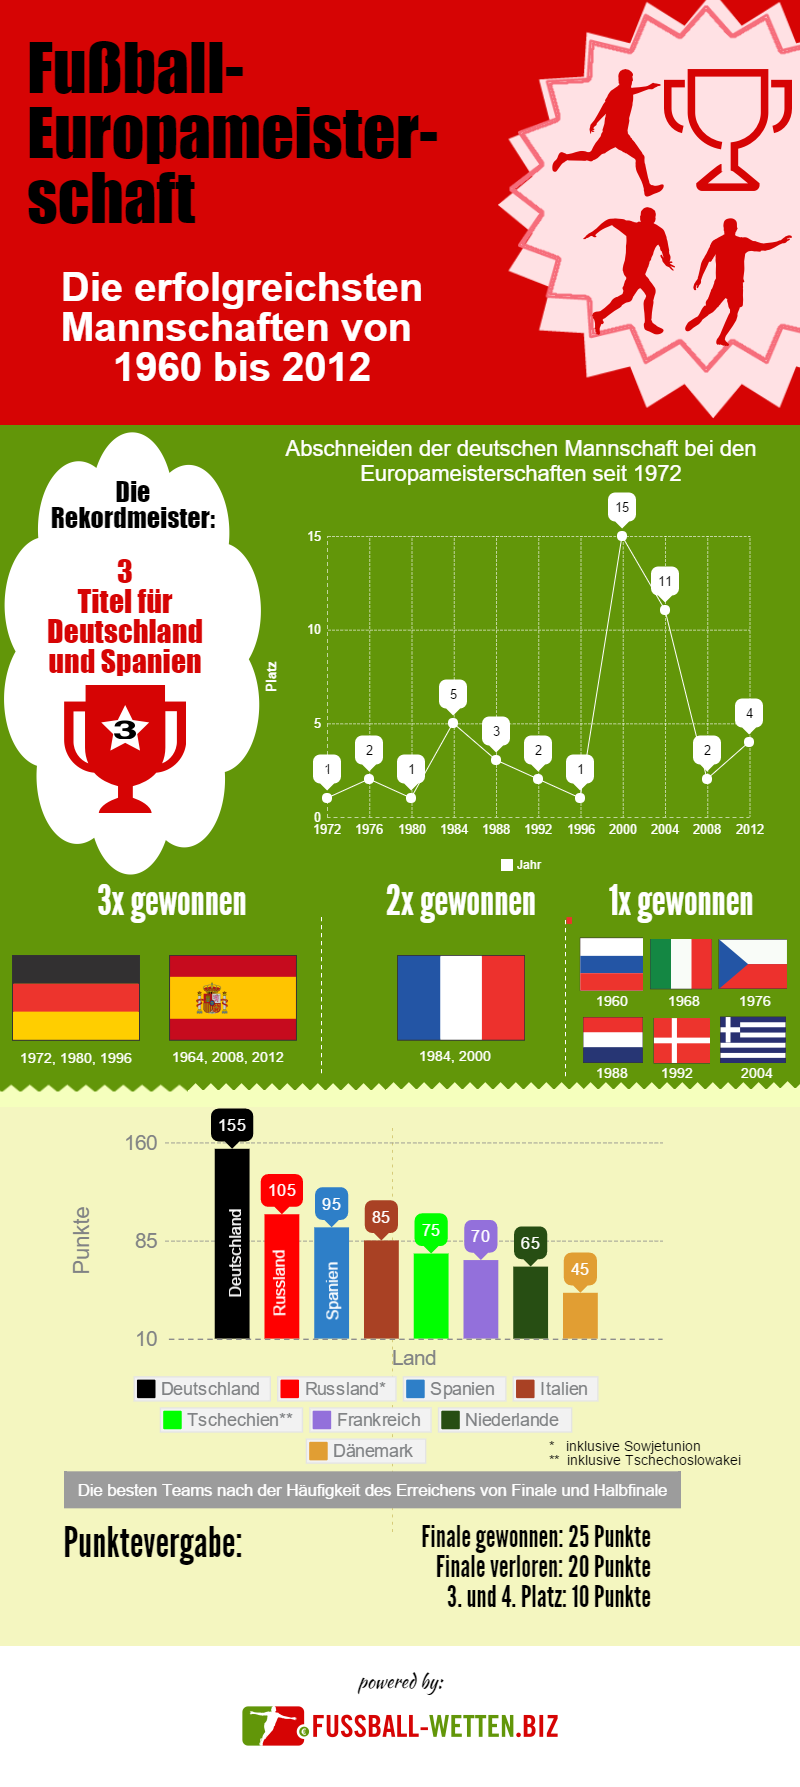 Die erfolgreichsten Mannschaften bei den Europameisterschaften von 1960 bis 2012